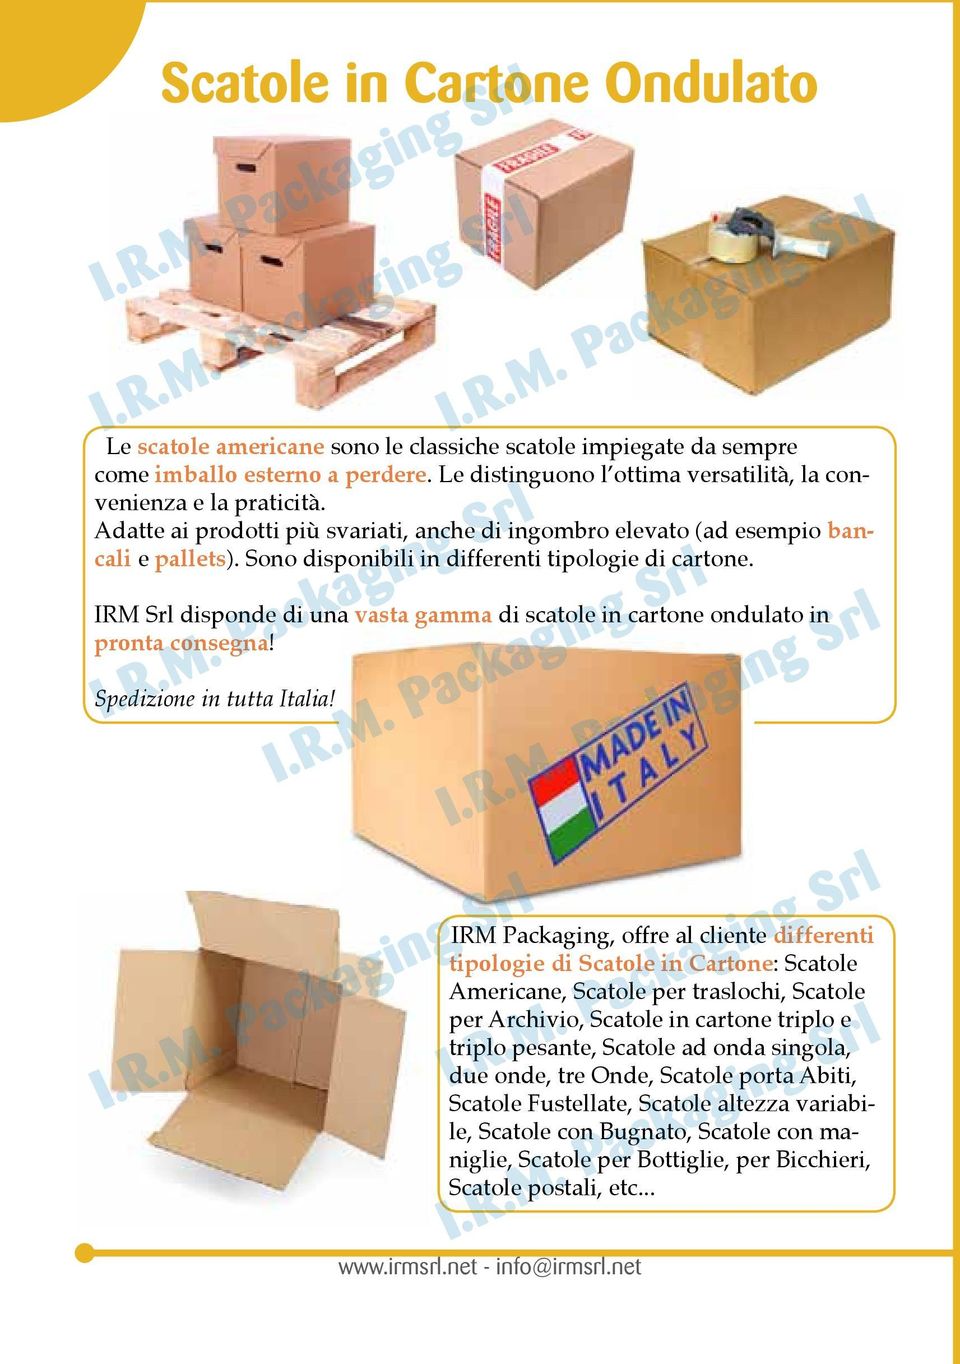 IRM Srl disponde di una vasta gamma di scatole in cartone ondulato in pronta consegna! Spedizione in tutta Italia!